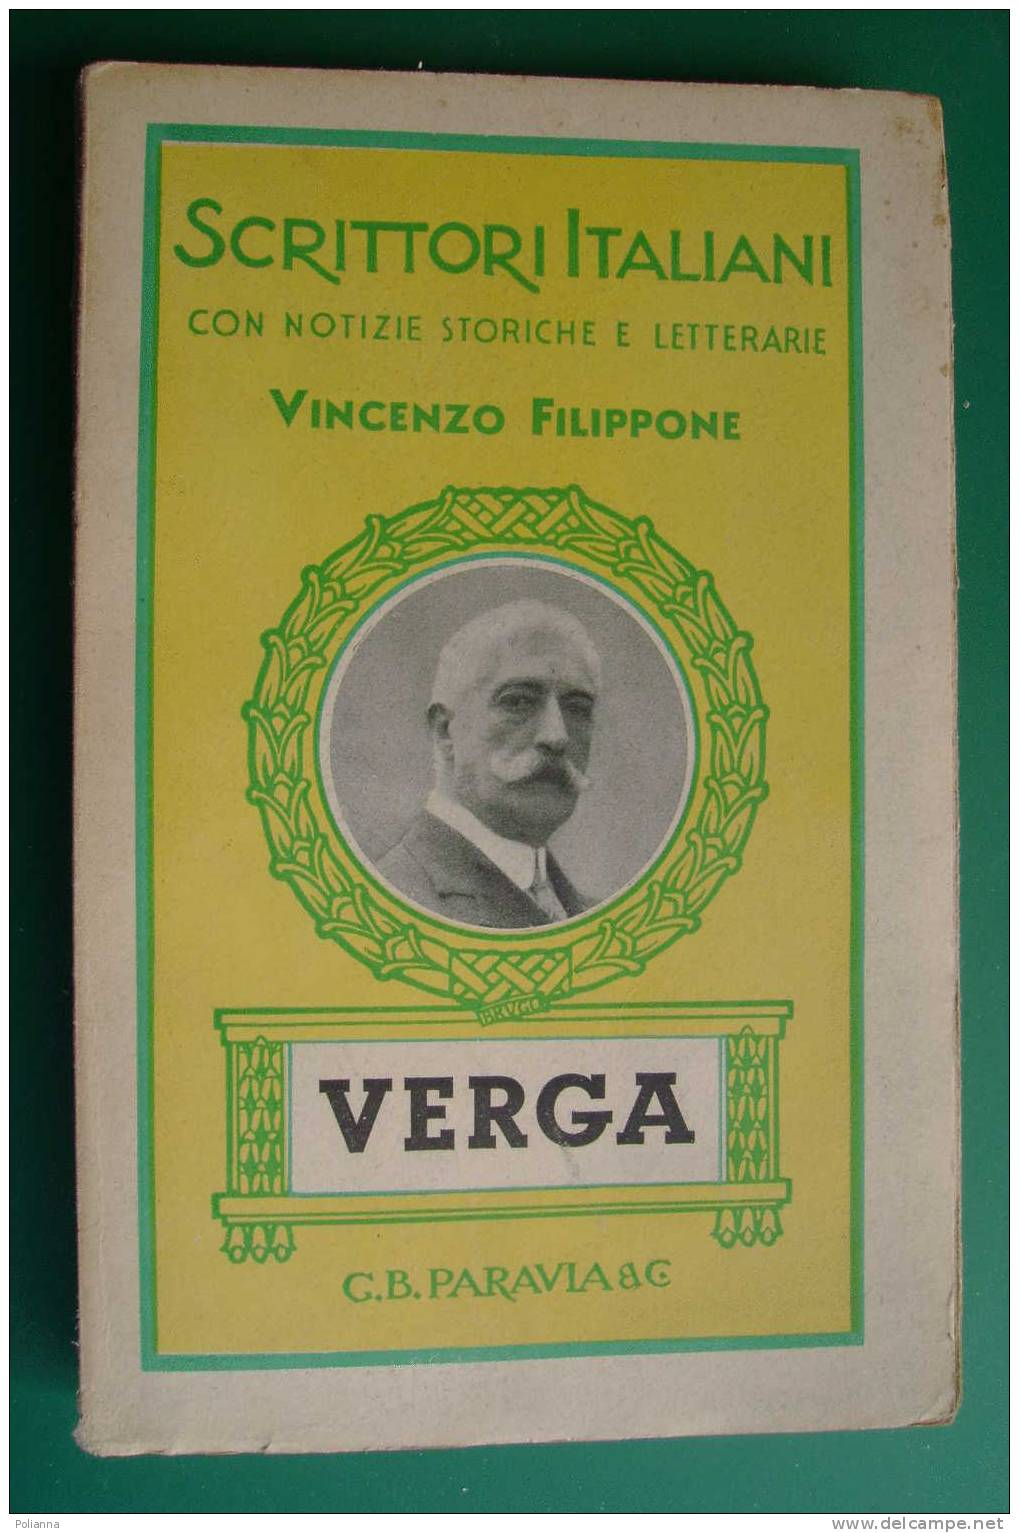 PDD/35 Scrittori Italiani - Vincenzo Filippone - VERGA  Paravia 1942 - Antichi